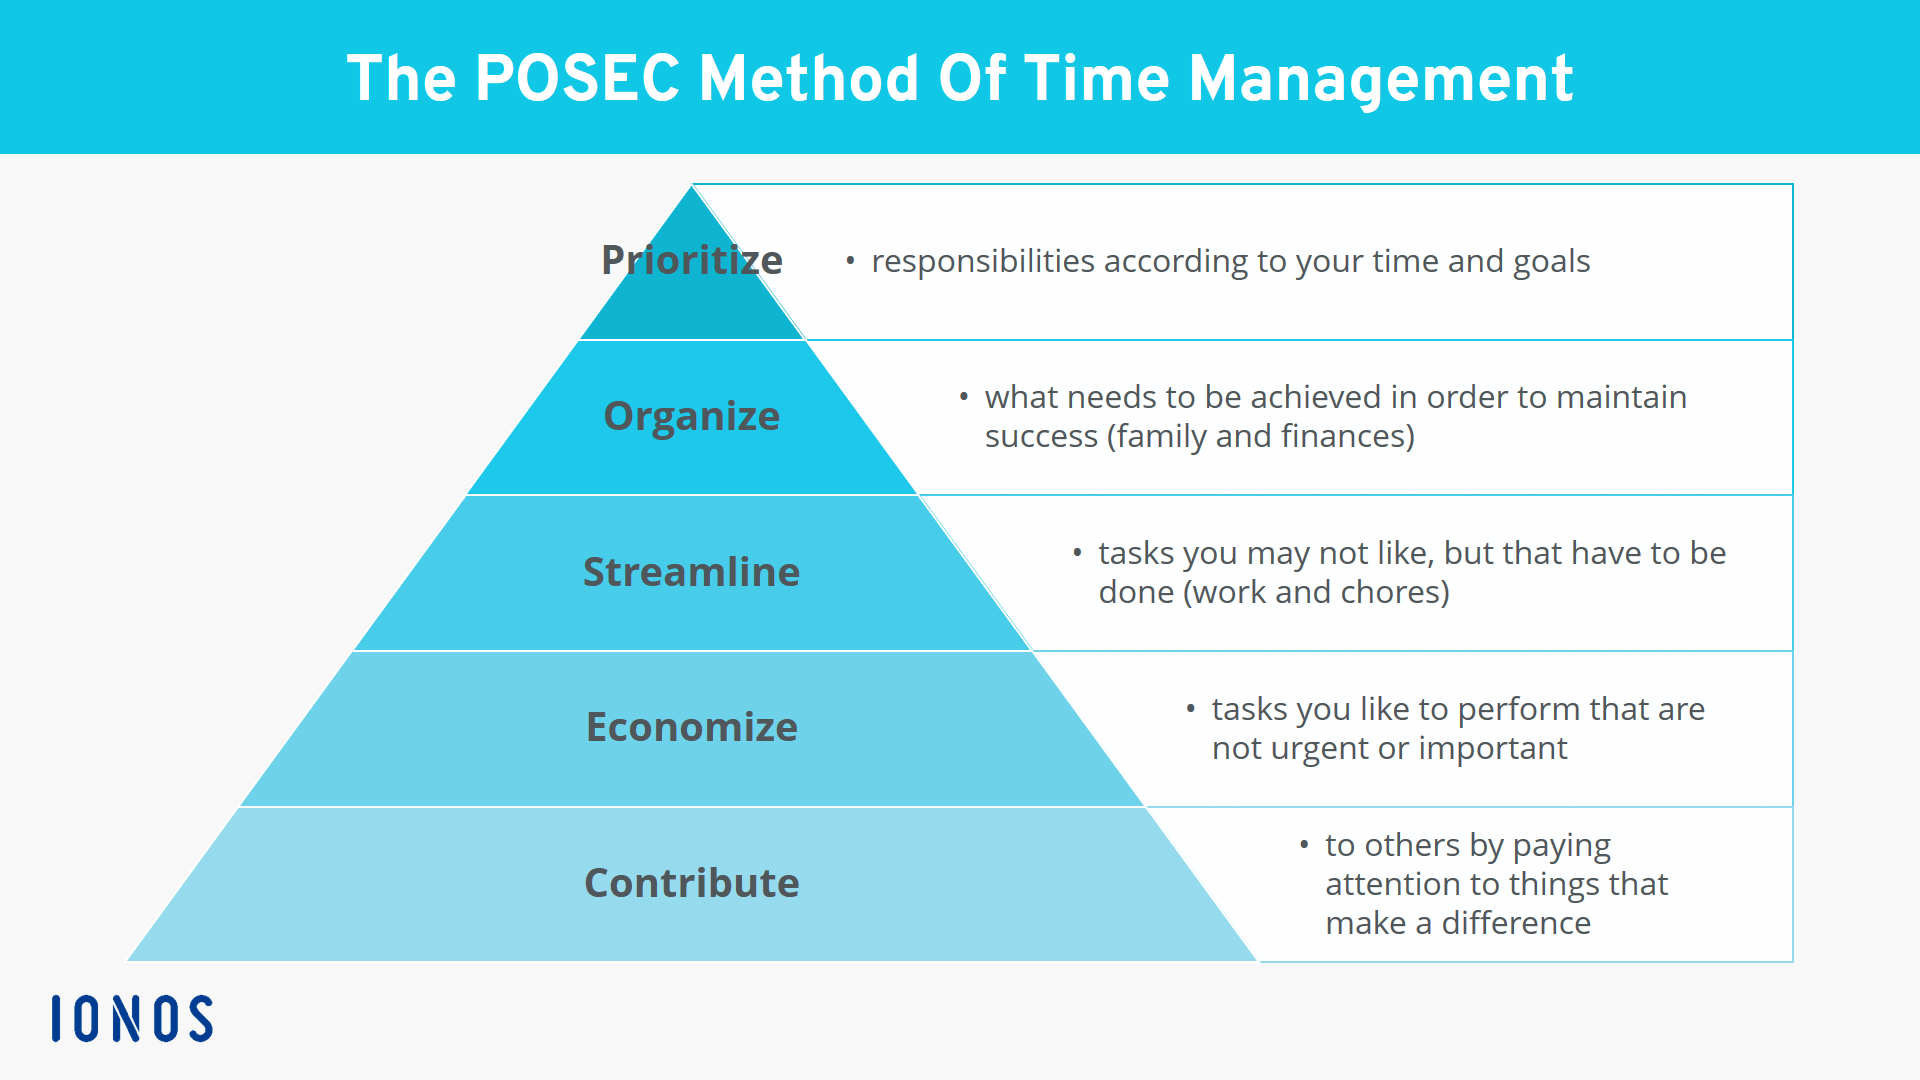 The POSEC method